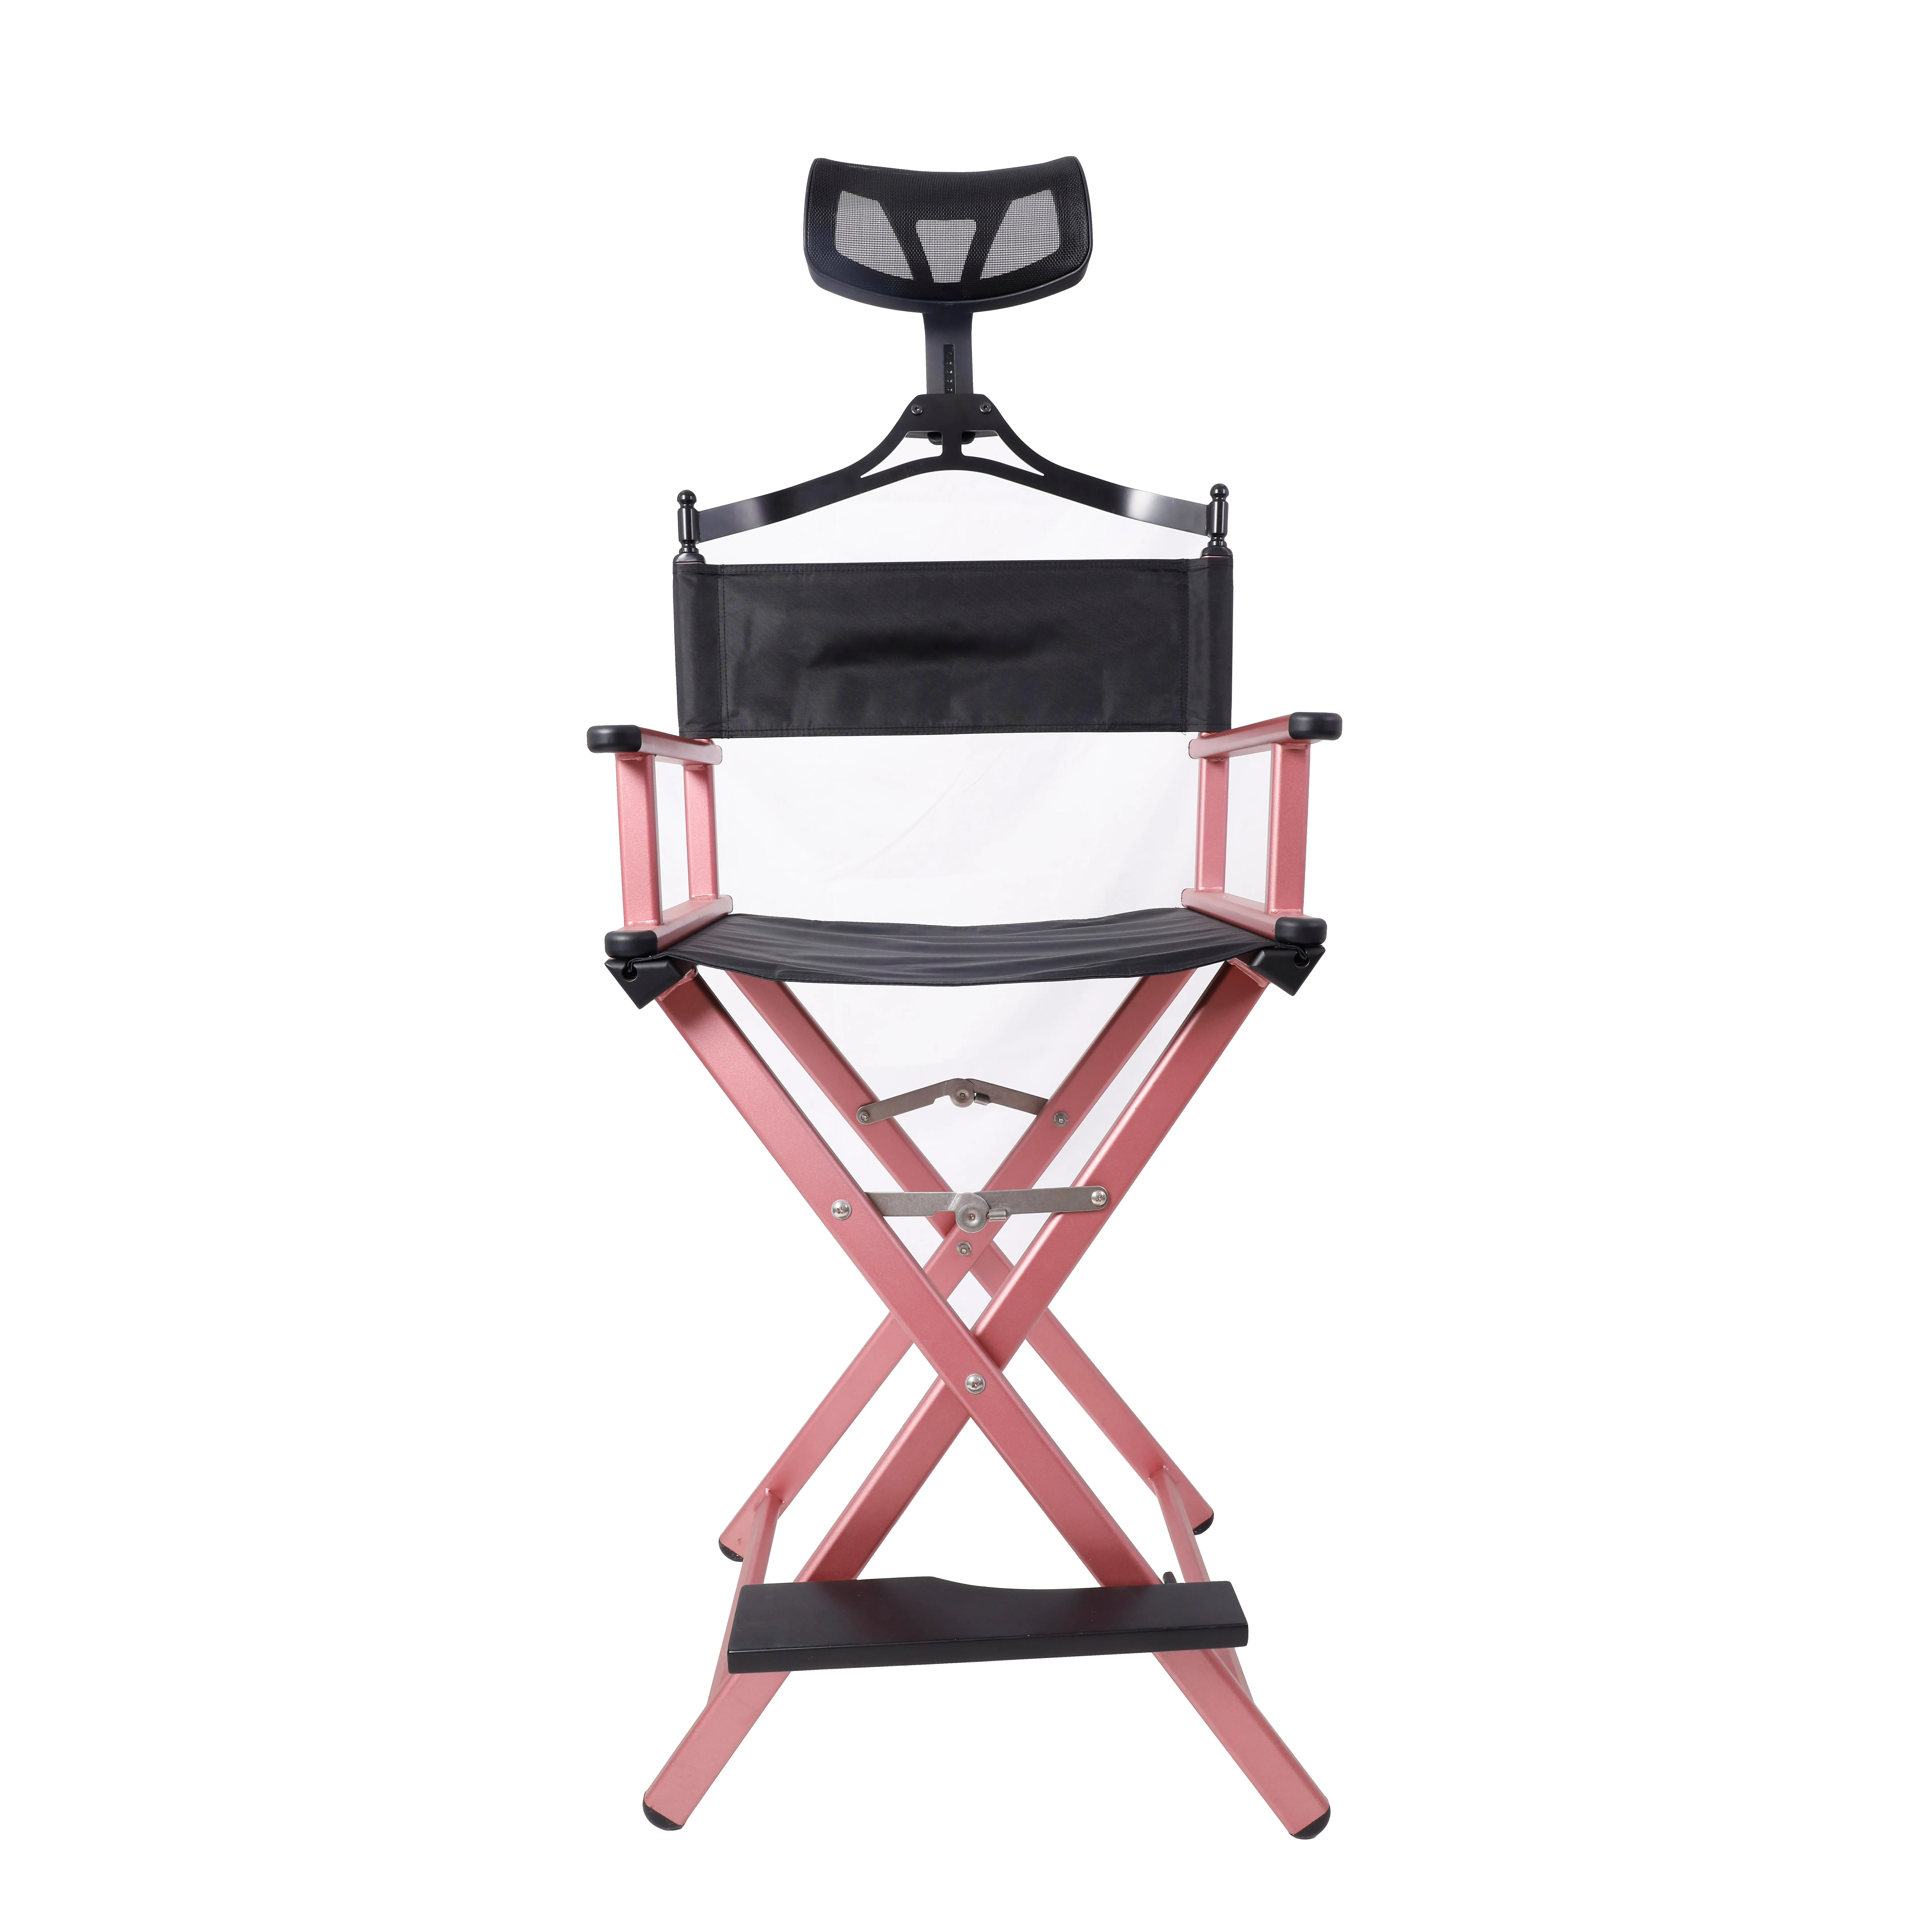 최신 판매 메이크업 의자 휴대용 접히는 아름다움 의자 옥외 활동 메이크업 지면 좌석